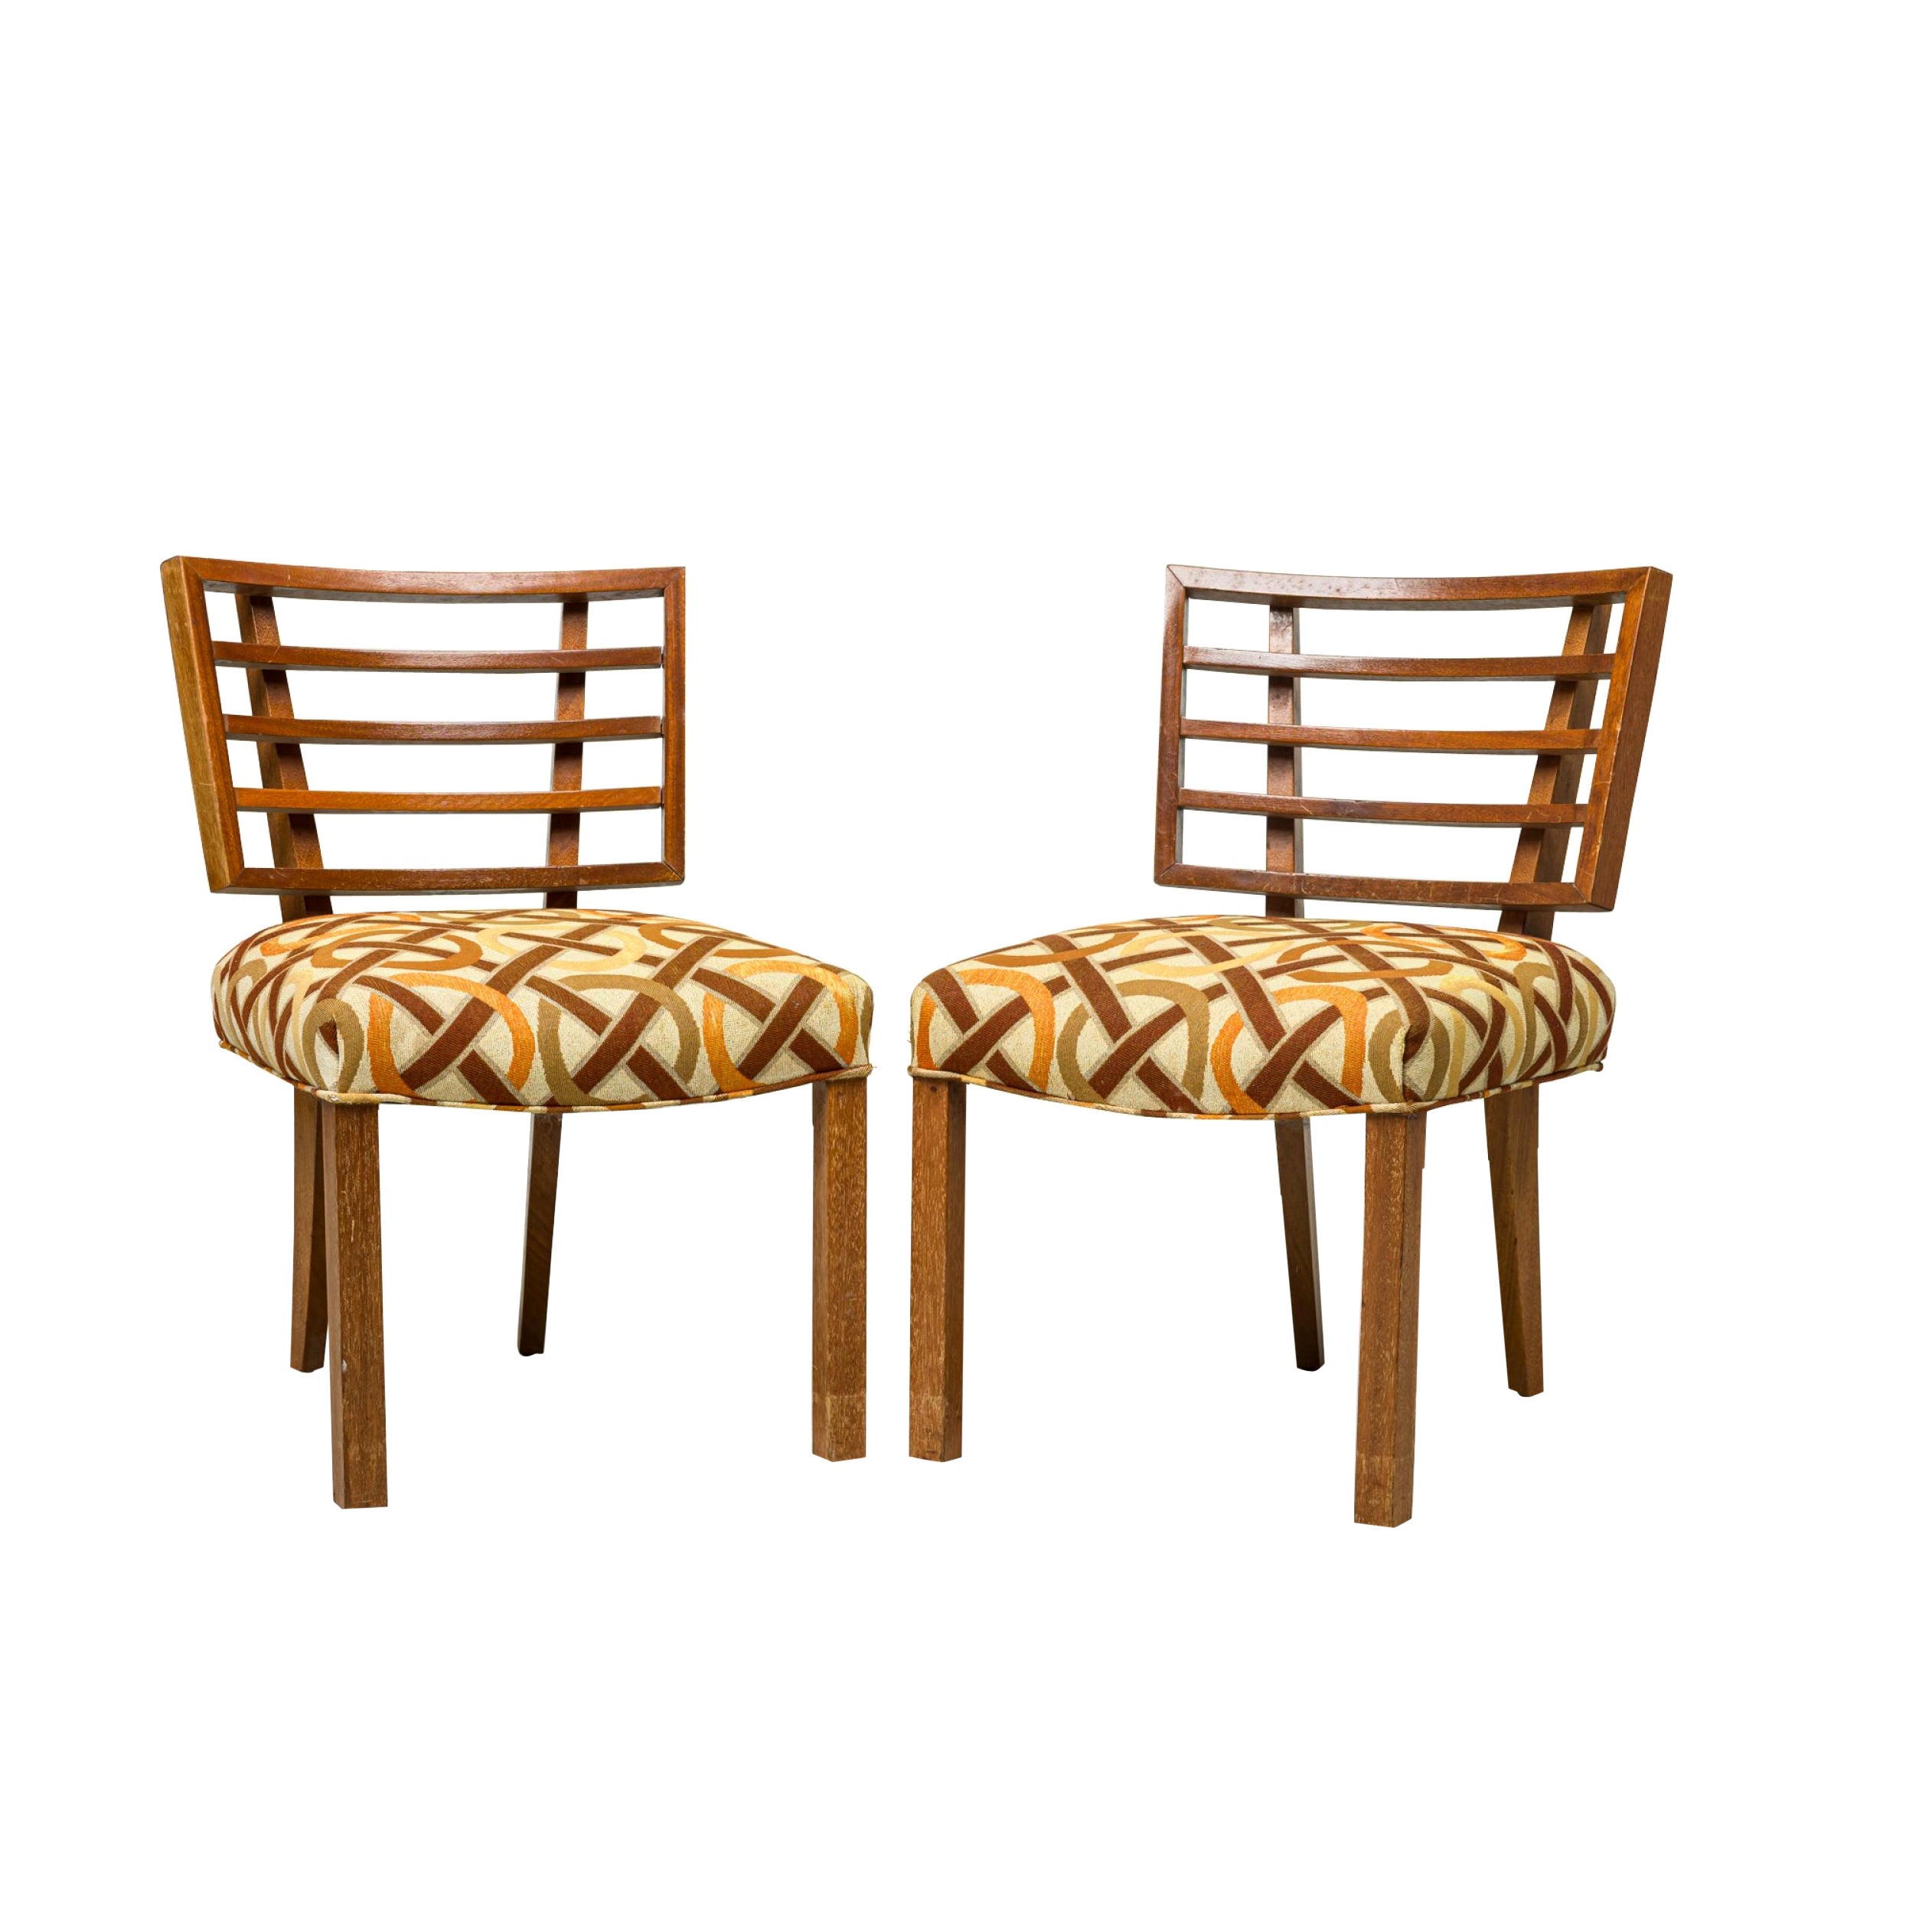 Paul Laszlo ensemble de 4 chaises de salle à manger/d'appoint tapissées de motifs géométriques américains